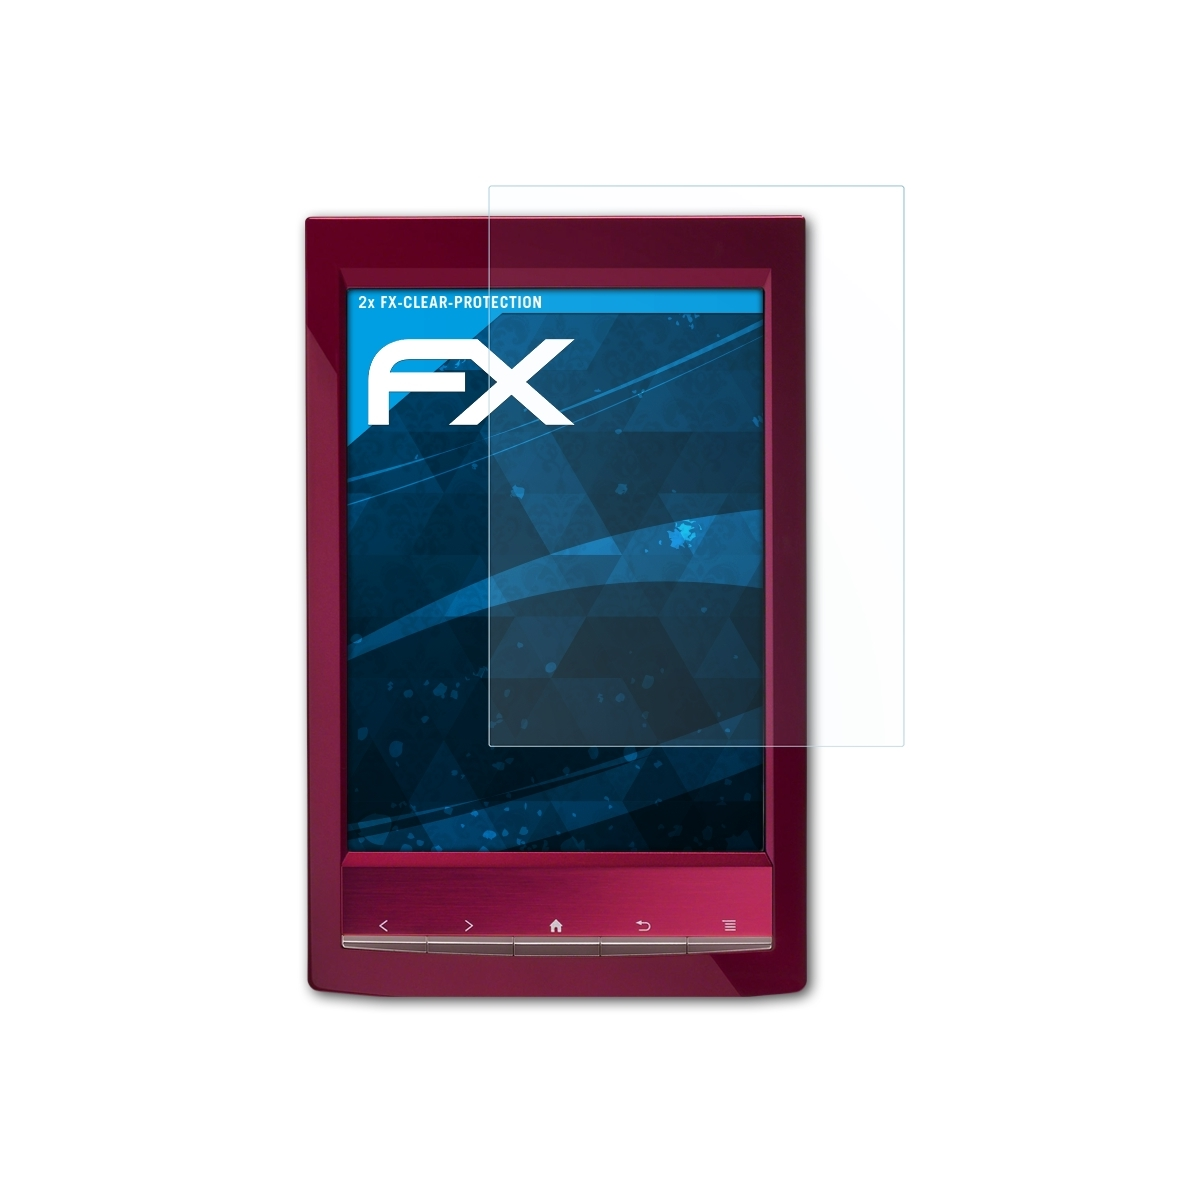 Displayschutz(für PRS-T1 Sony ATFOLIX Reader) FX-Clear 2x